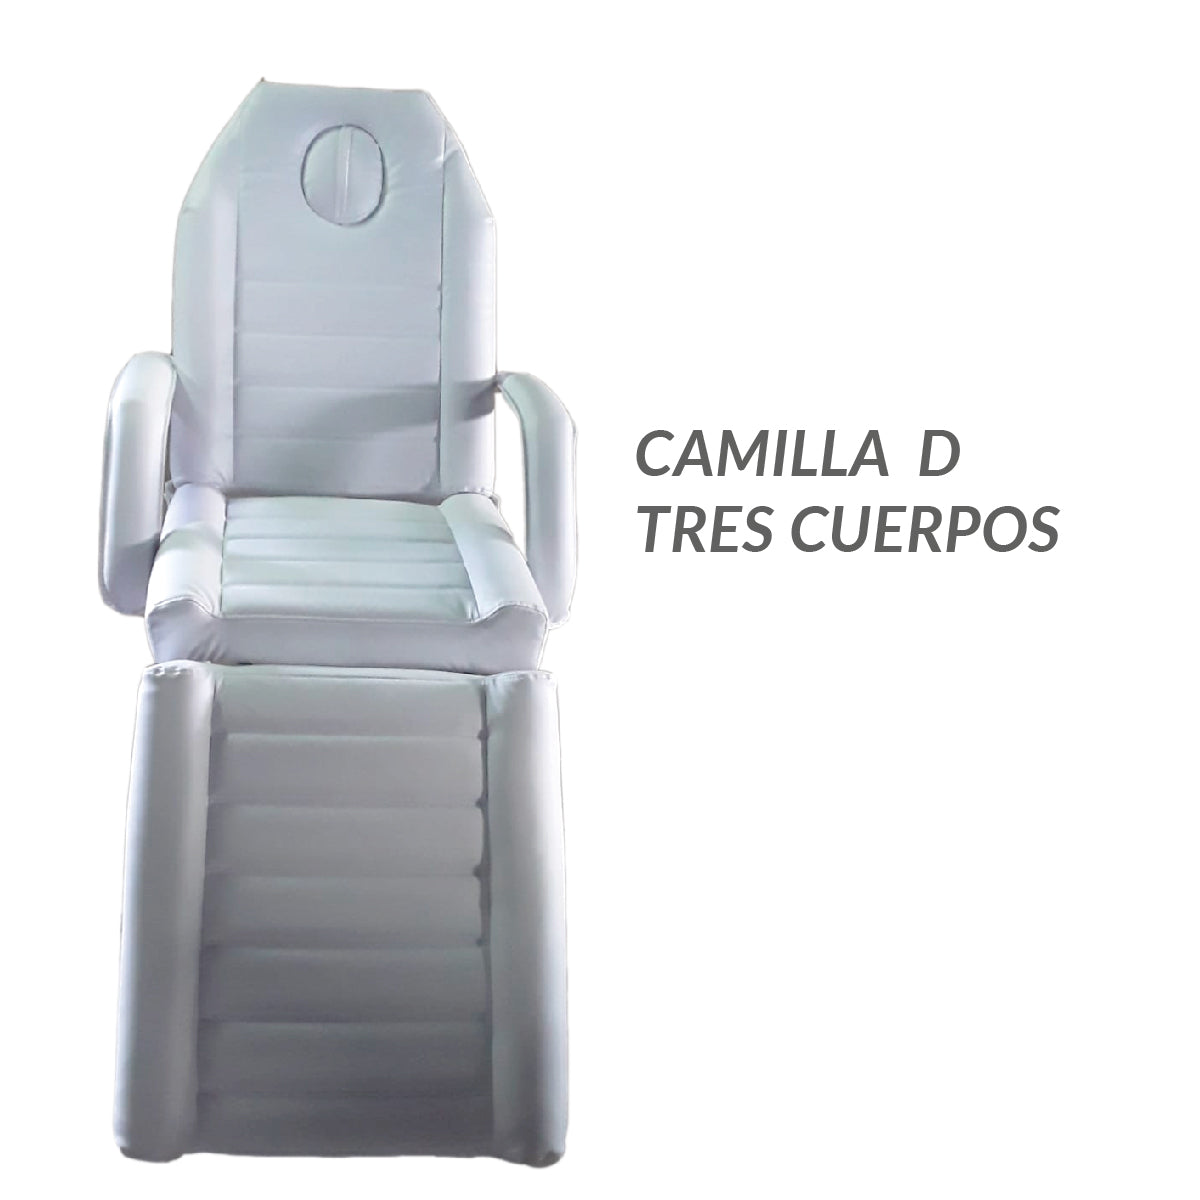 Camilla D Tres Cuerpos